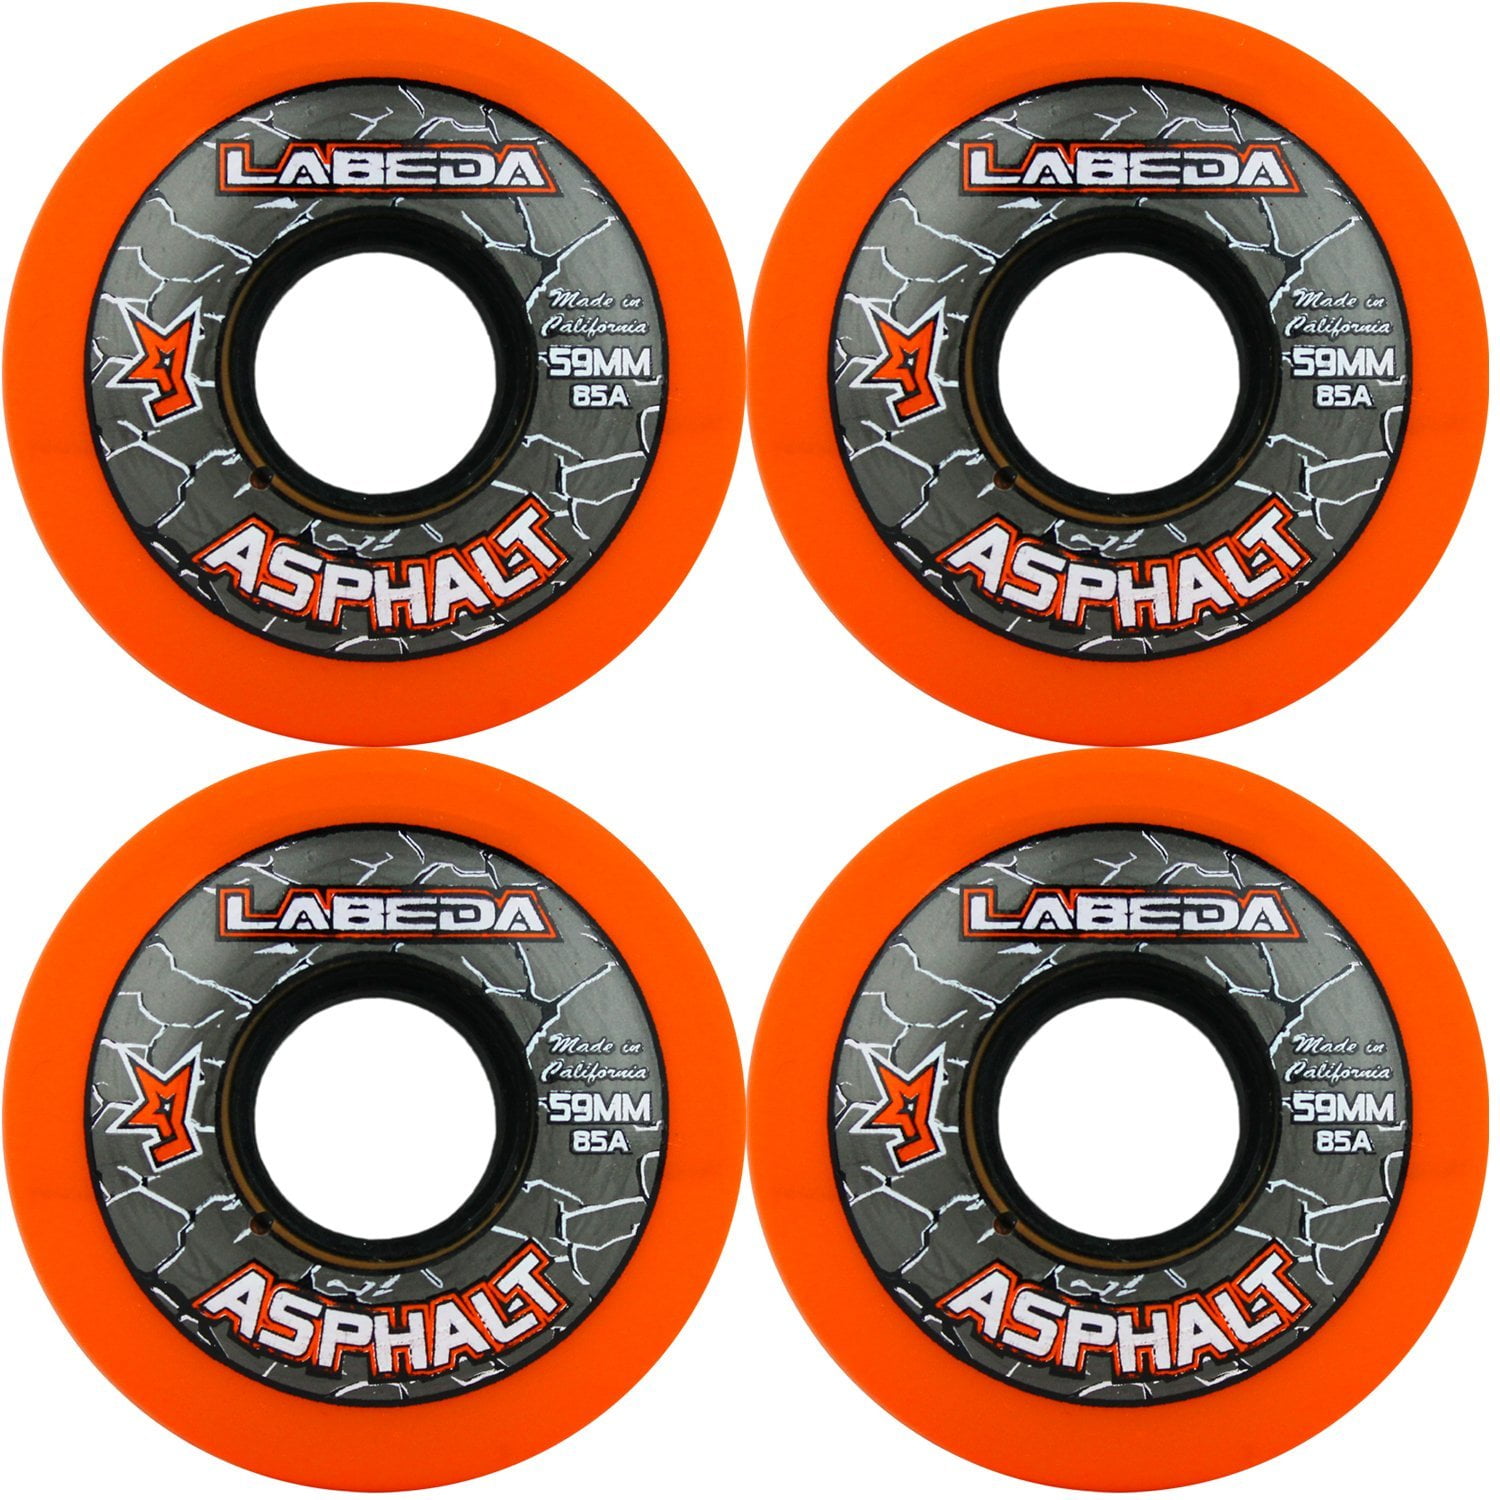 Labeda Gripper Asphalt Outdoor Inline Roller Hockey Wheels with Ceramic Bearings 